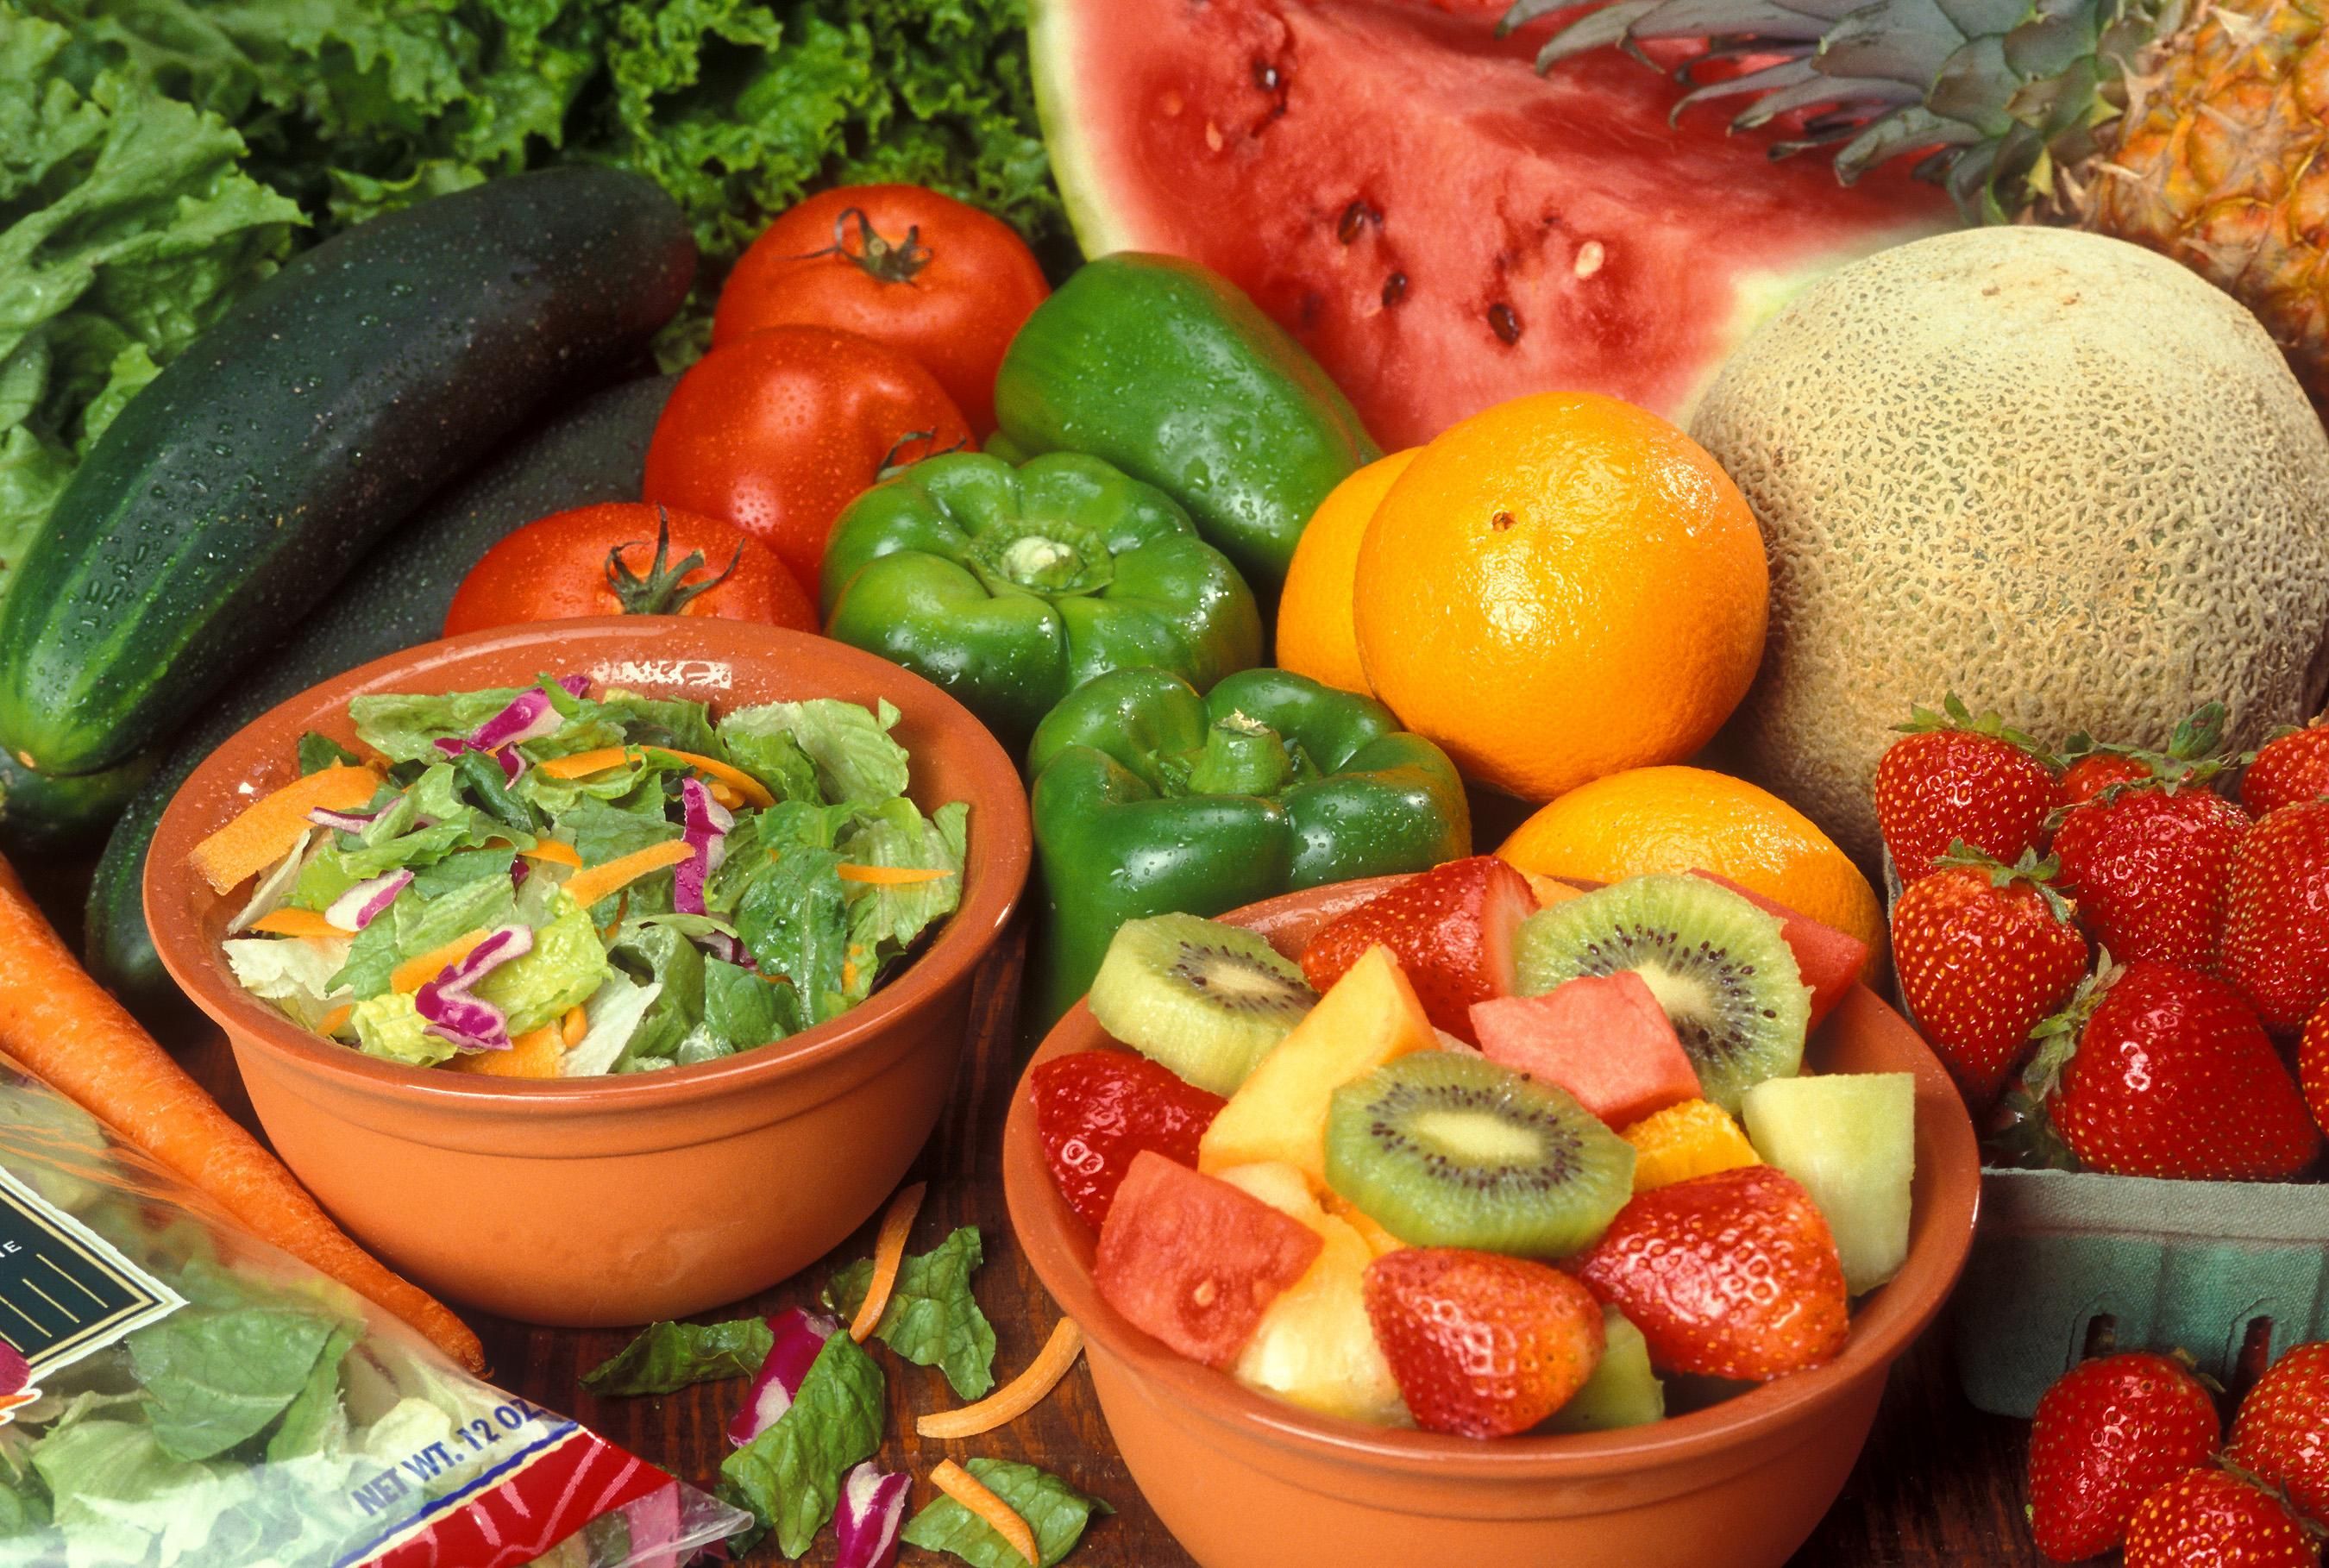 Για περισσότερα χρόνια ζωής, φάτε δέκα μερίδες φρούτων και λαχανικών κάθε μέρα